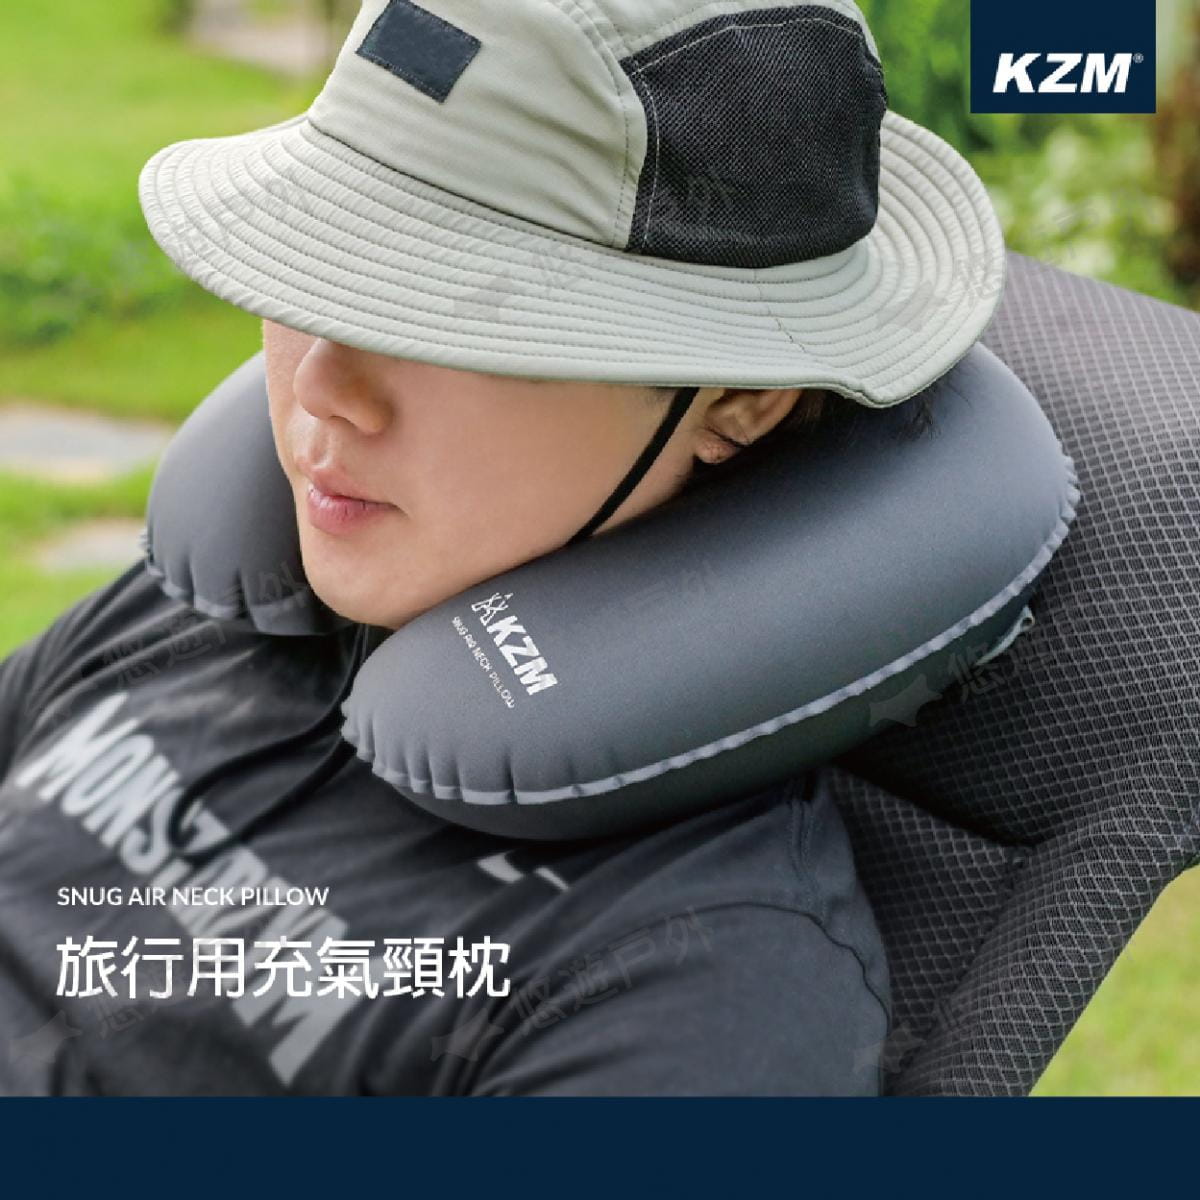 【KZM】旅行用充氣頸枕 旅行枕 護頸枕 辦公 午睡枕 登山 露營 野餐 悠遊戶外 1